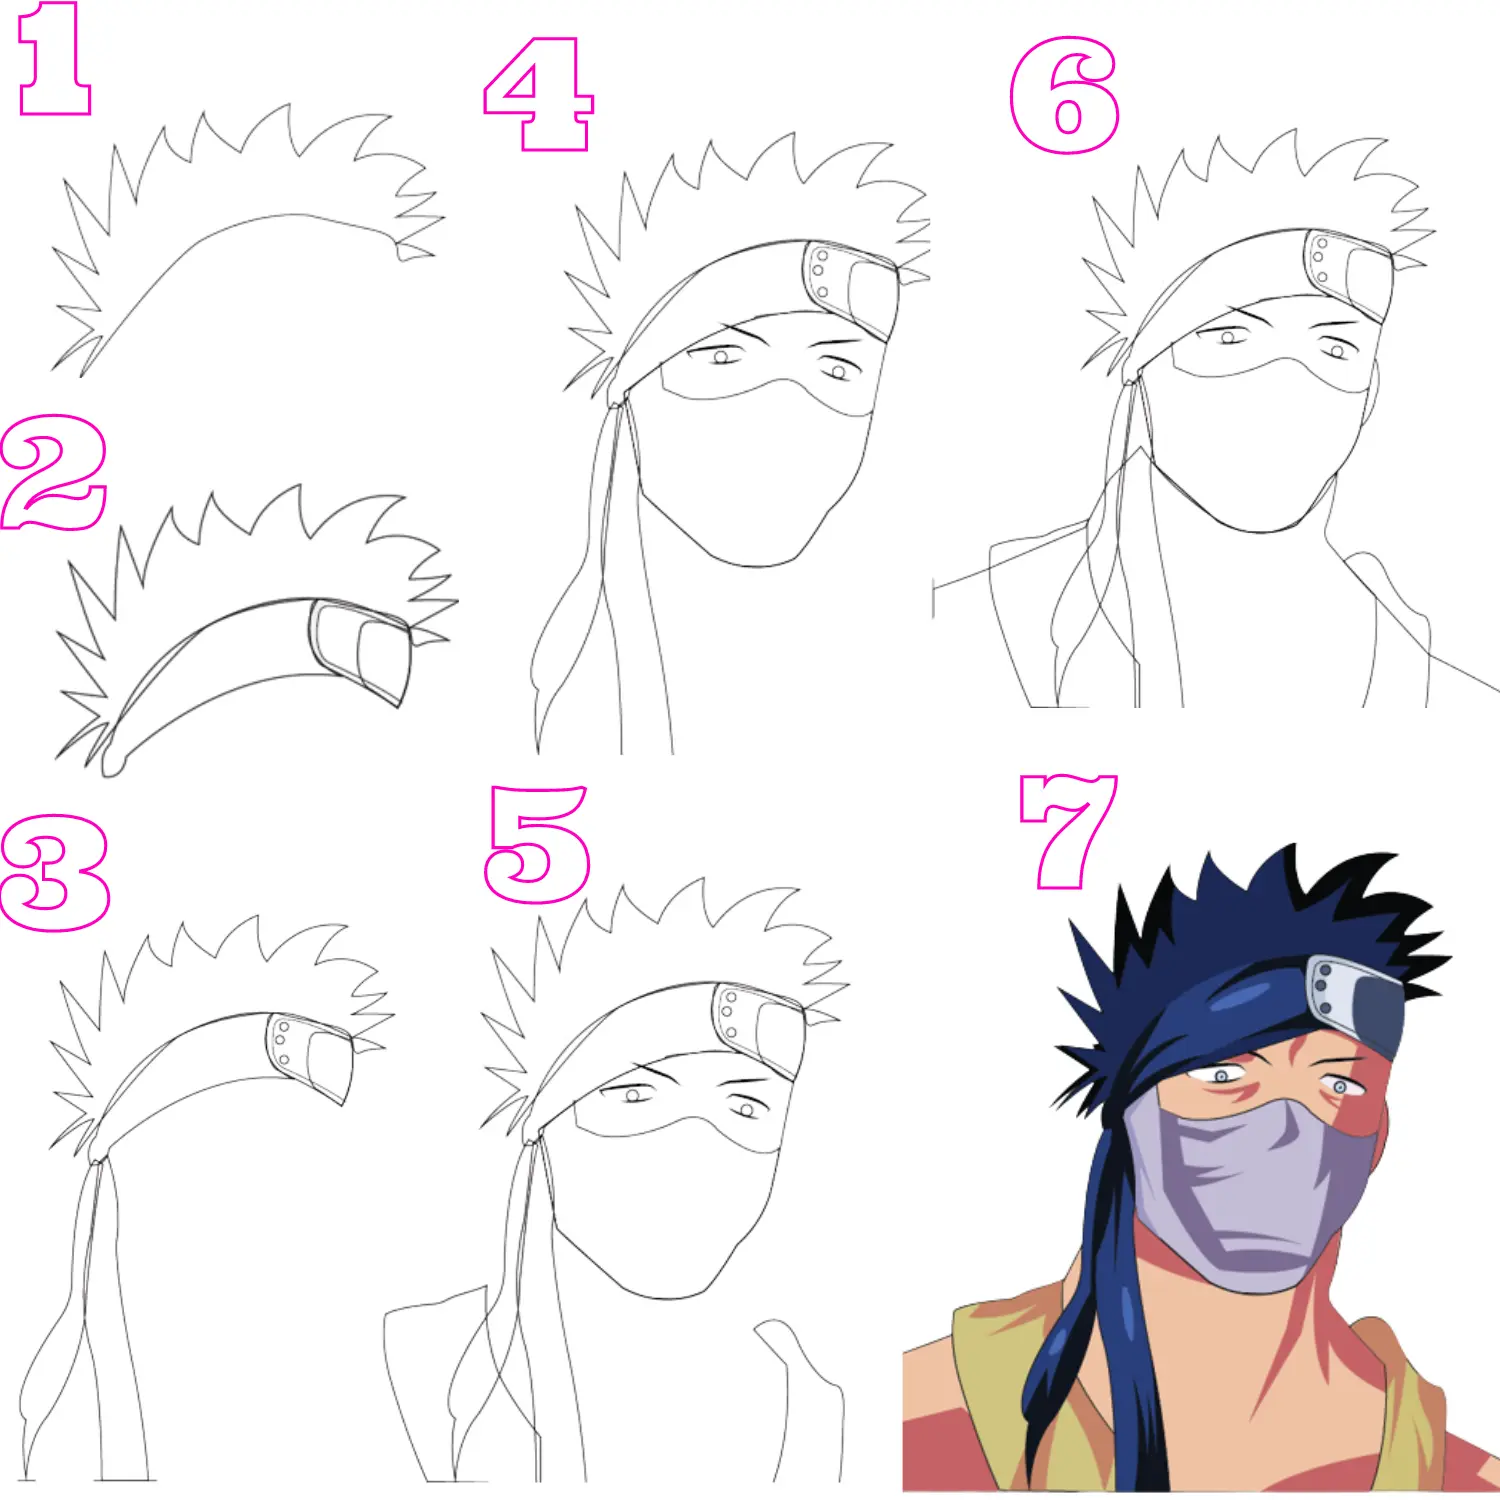 Zabuza-Naruto-Drawing-Step-by-Step-Guide